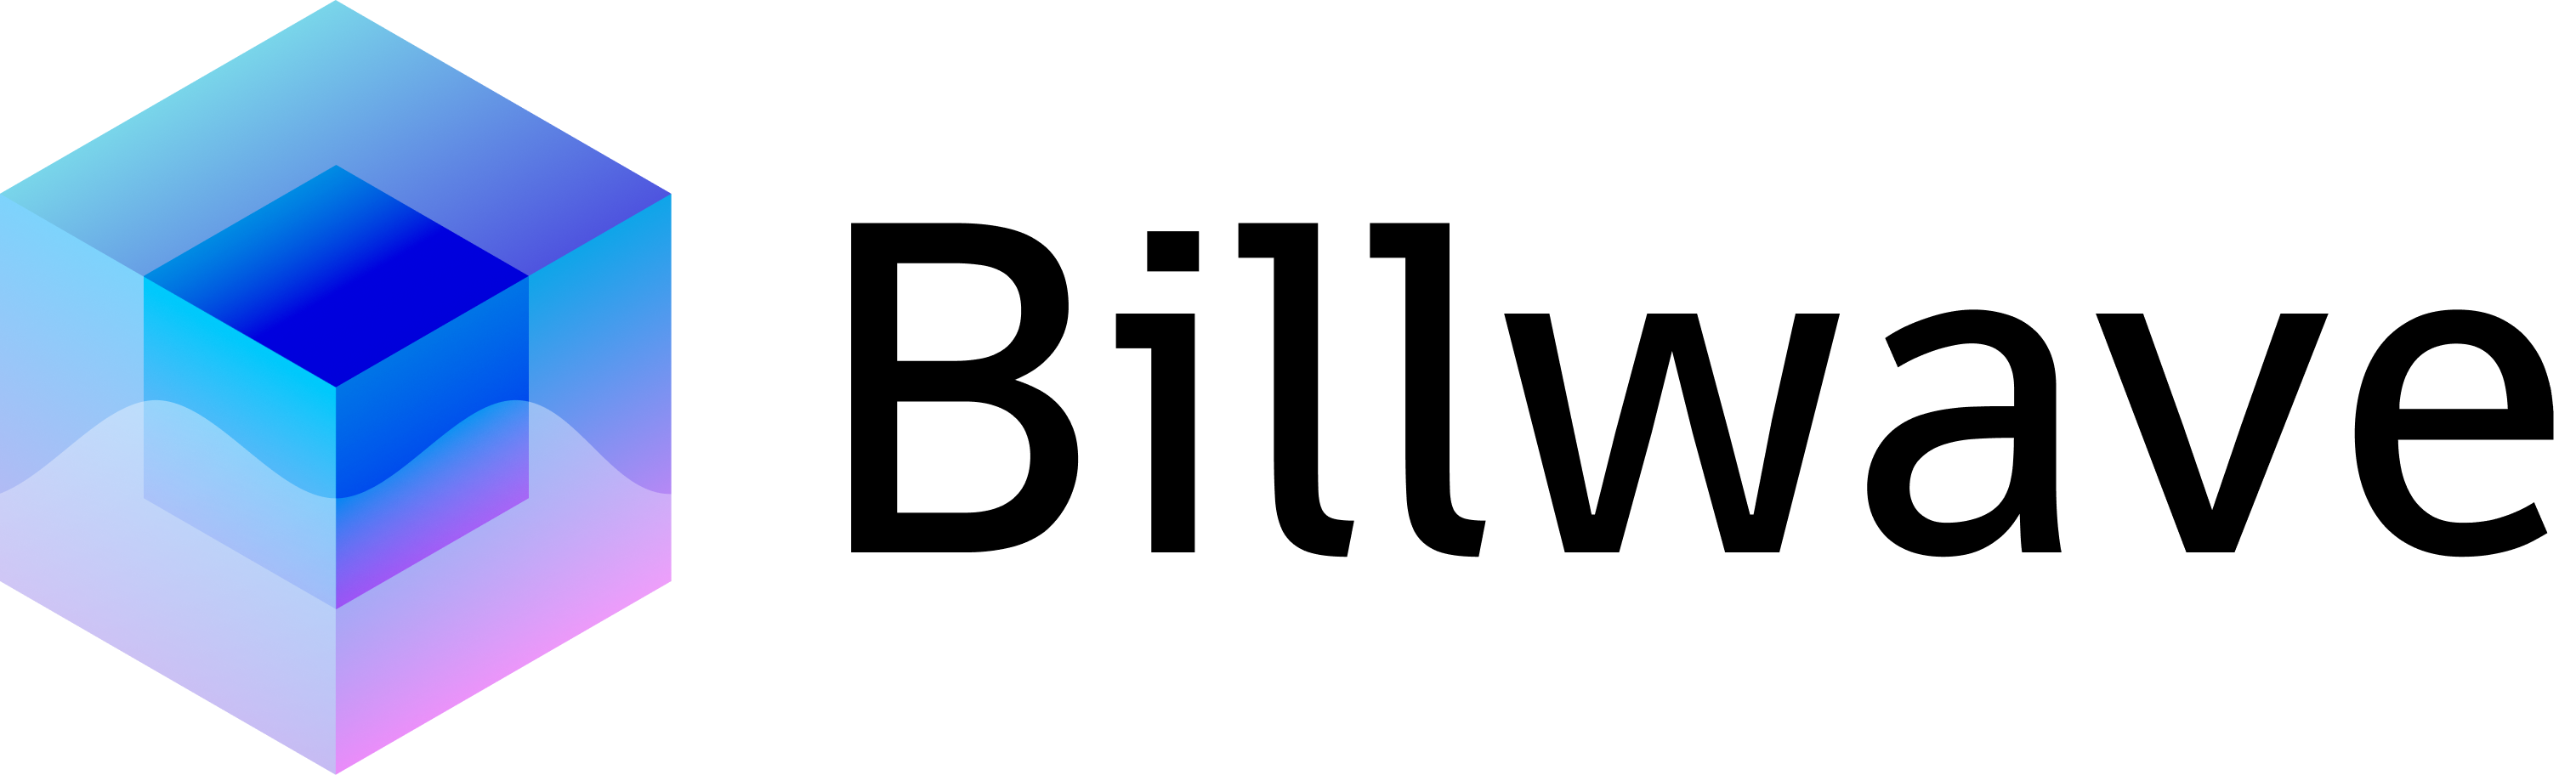 Billwave logotype